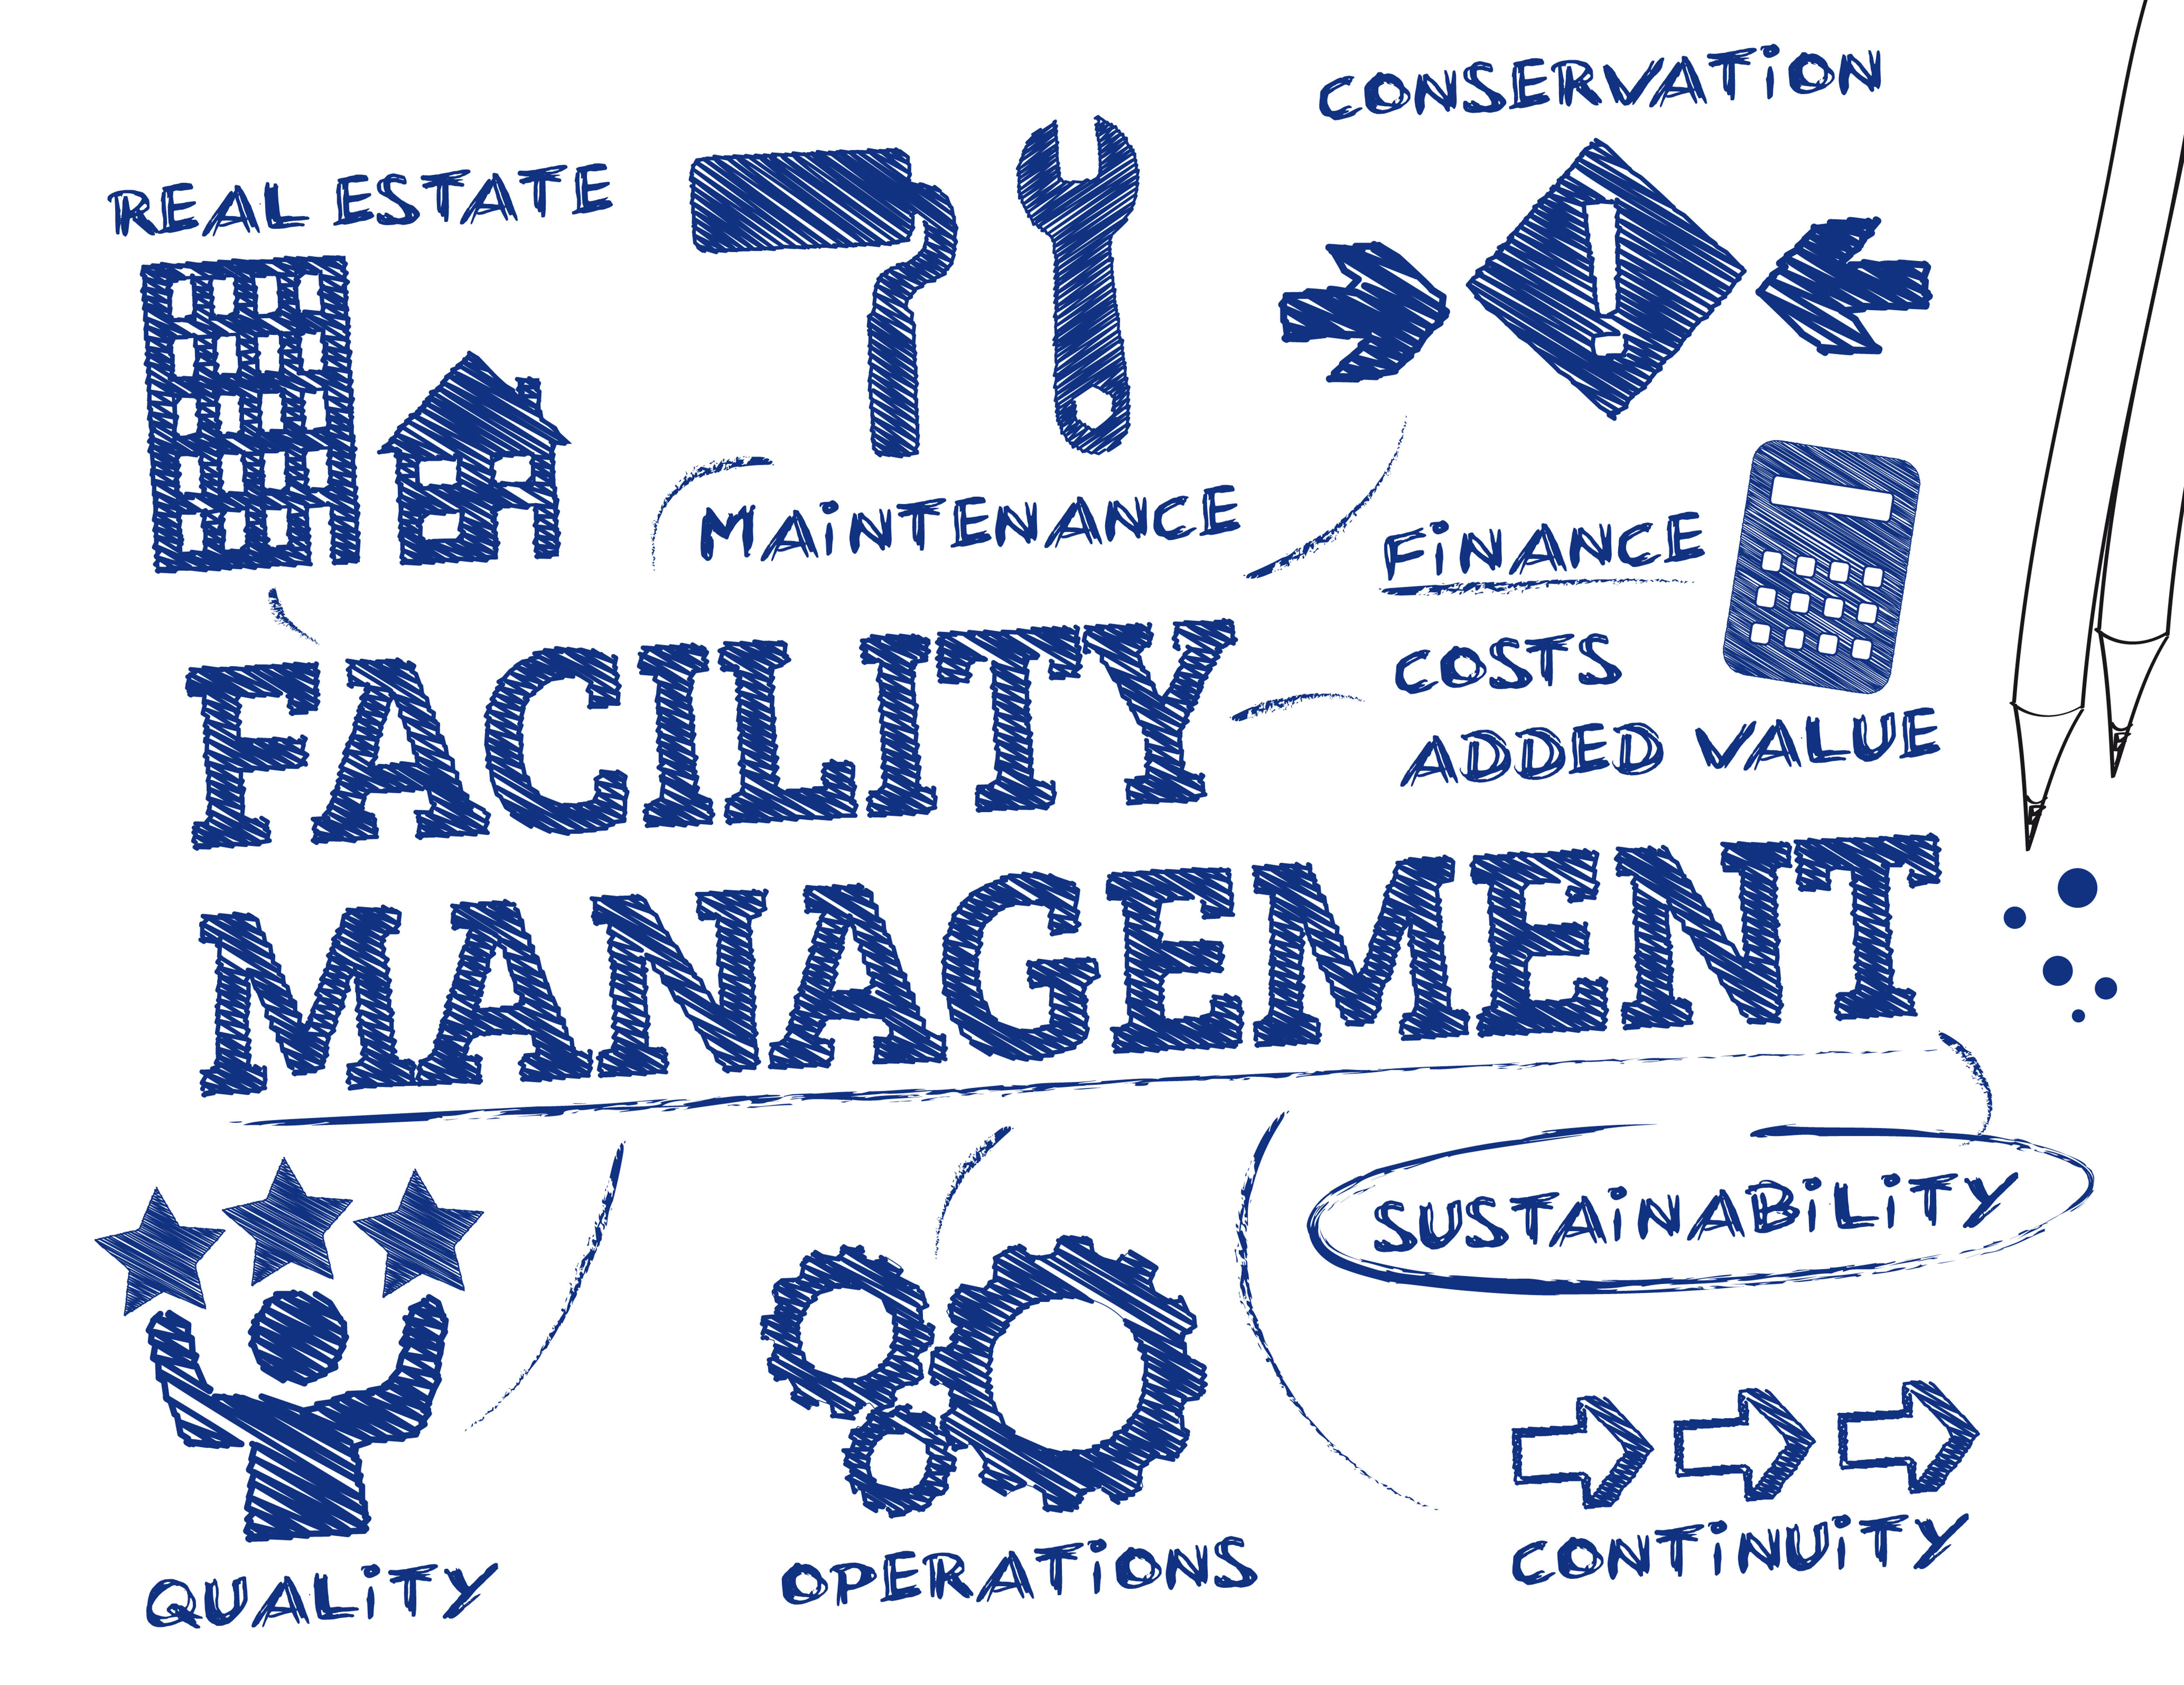 Facility ManagementI Image